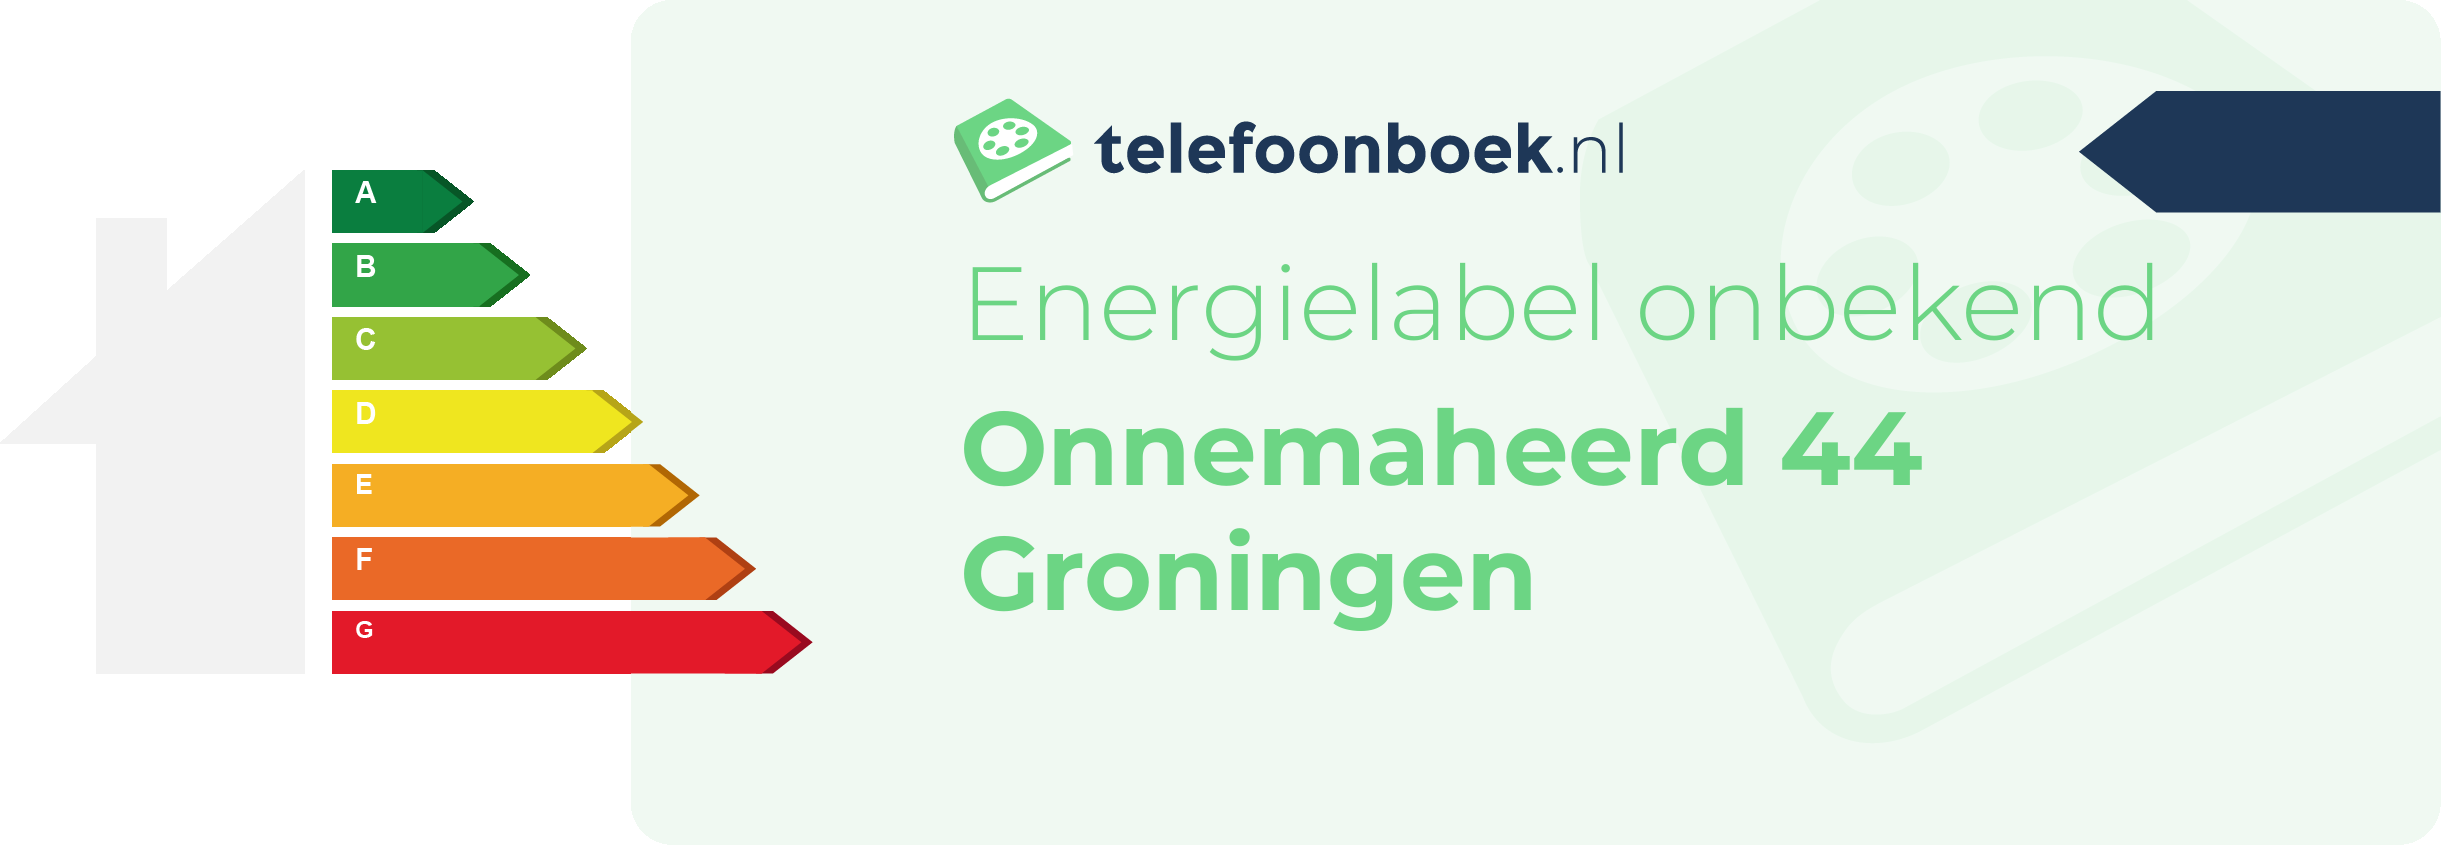 Energielabel Onnemaheerd 44 Groningen